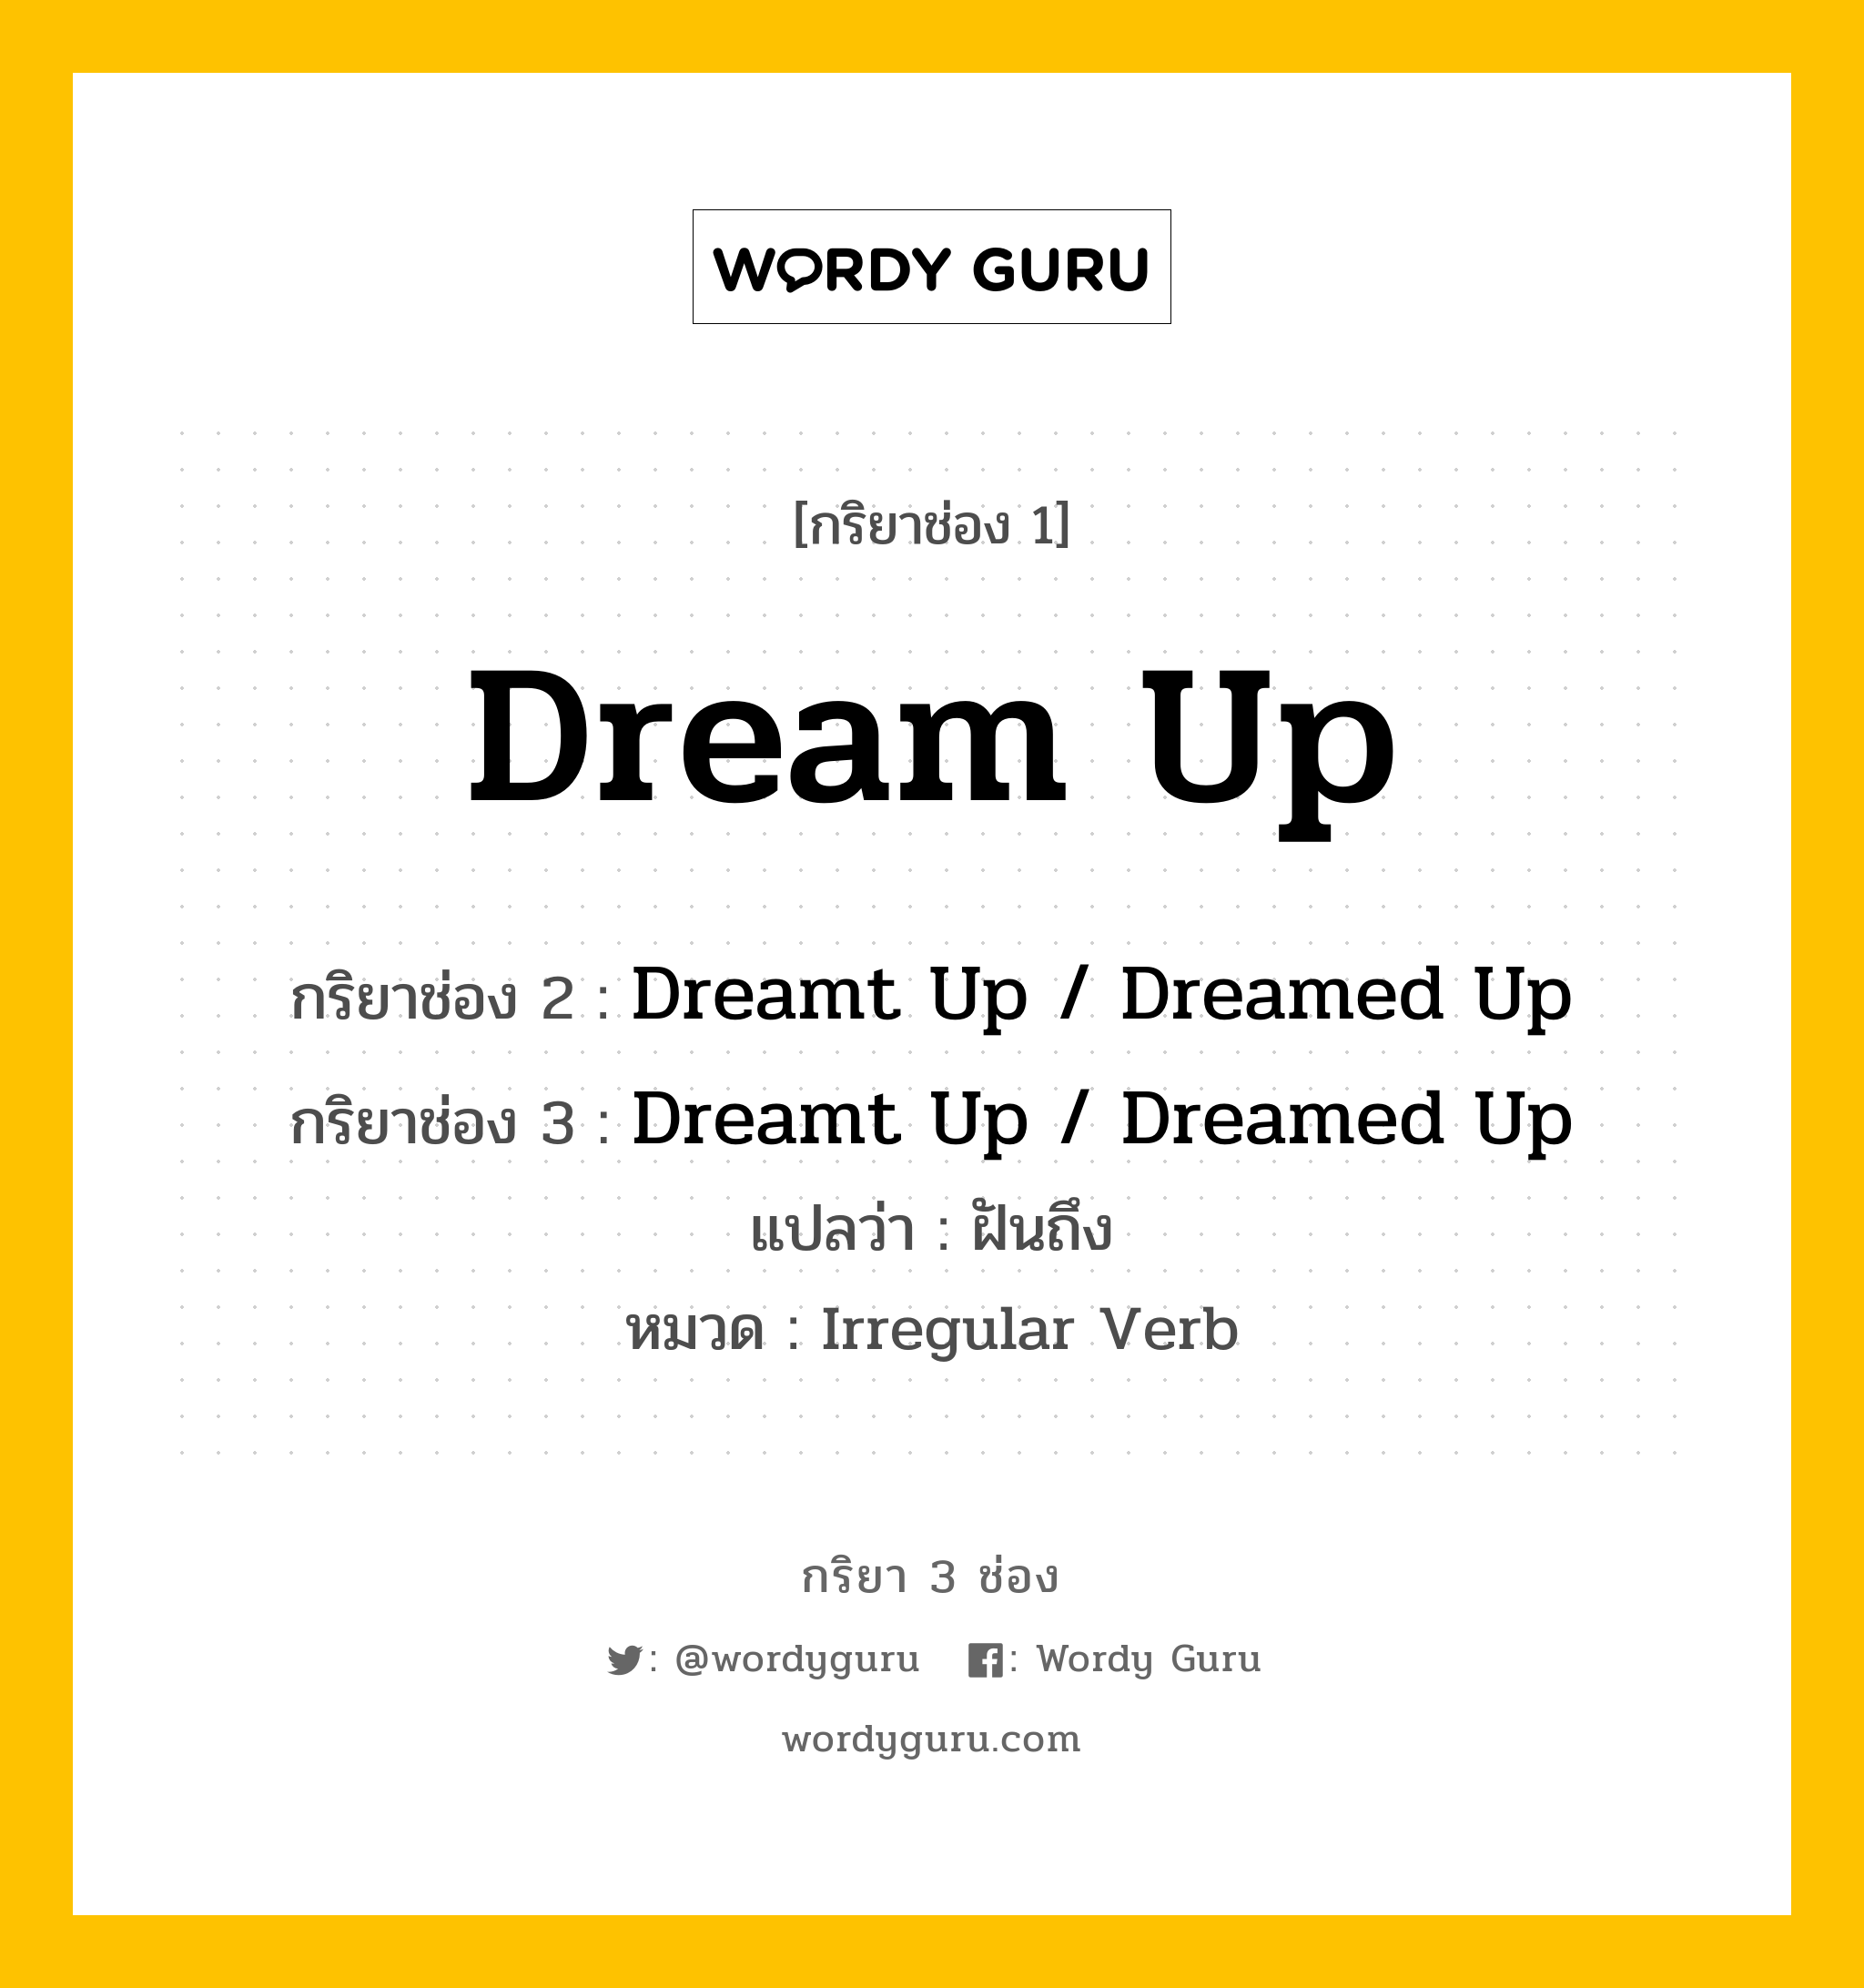 กริยา 3 ช่อง: Dream Up ช่อง 2 Dream Up ช่อง 3 คืออะไร, กริยาช่อง 1 Dream Up กริยาช่อง 2 Dreamt Up / Dreamed Up กริยาช่อง 3 Dreamt Up / Dreamed Up แปลว่า ฝันถึง หมวด Irregular Verb หมวด Irregular Verb